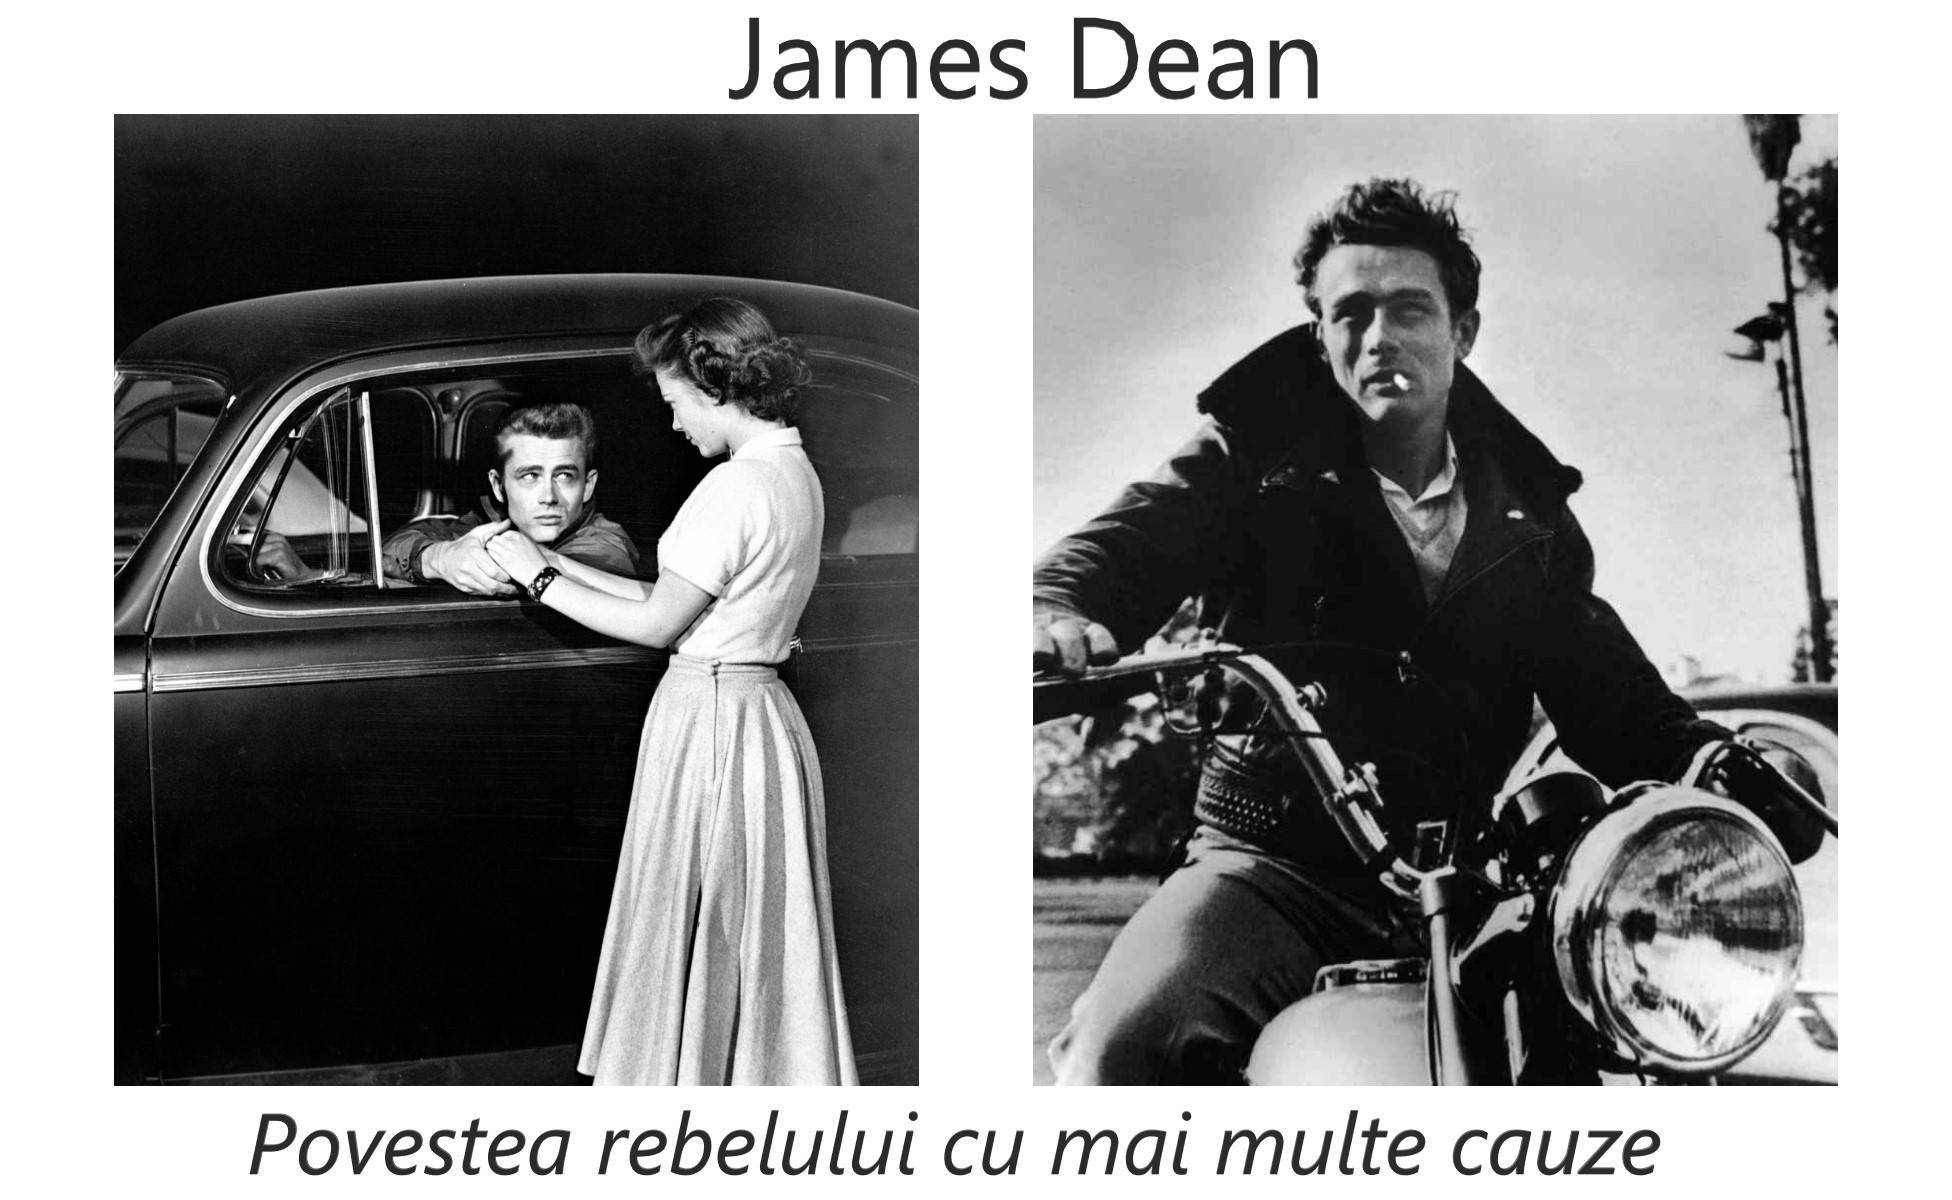 James Dean, rebelul cu mai multe cauze